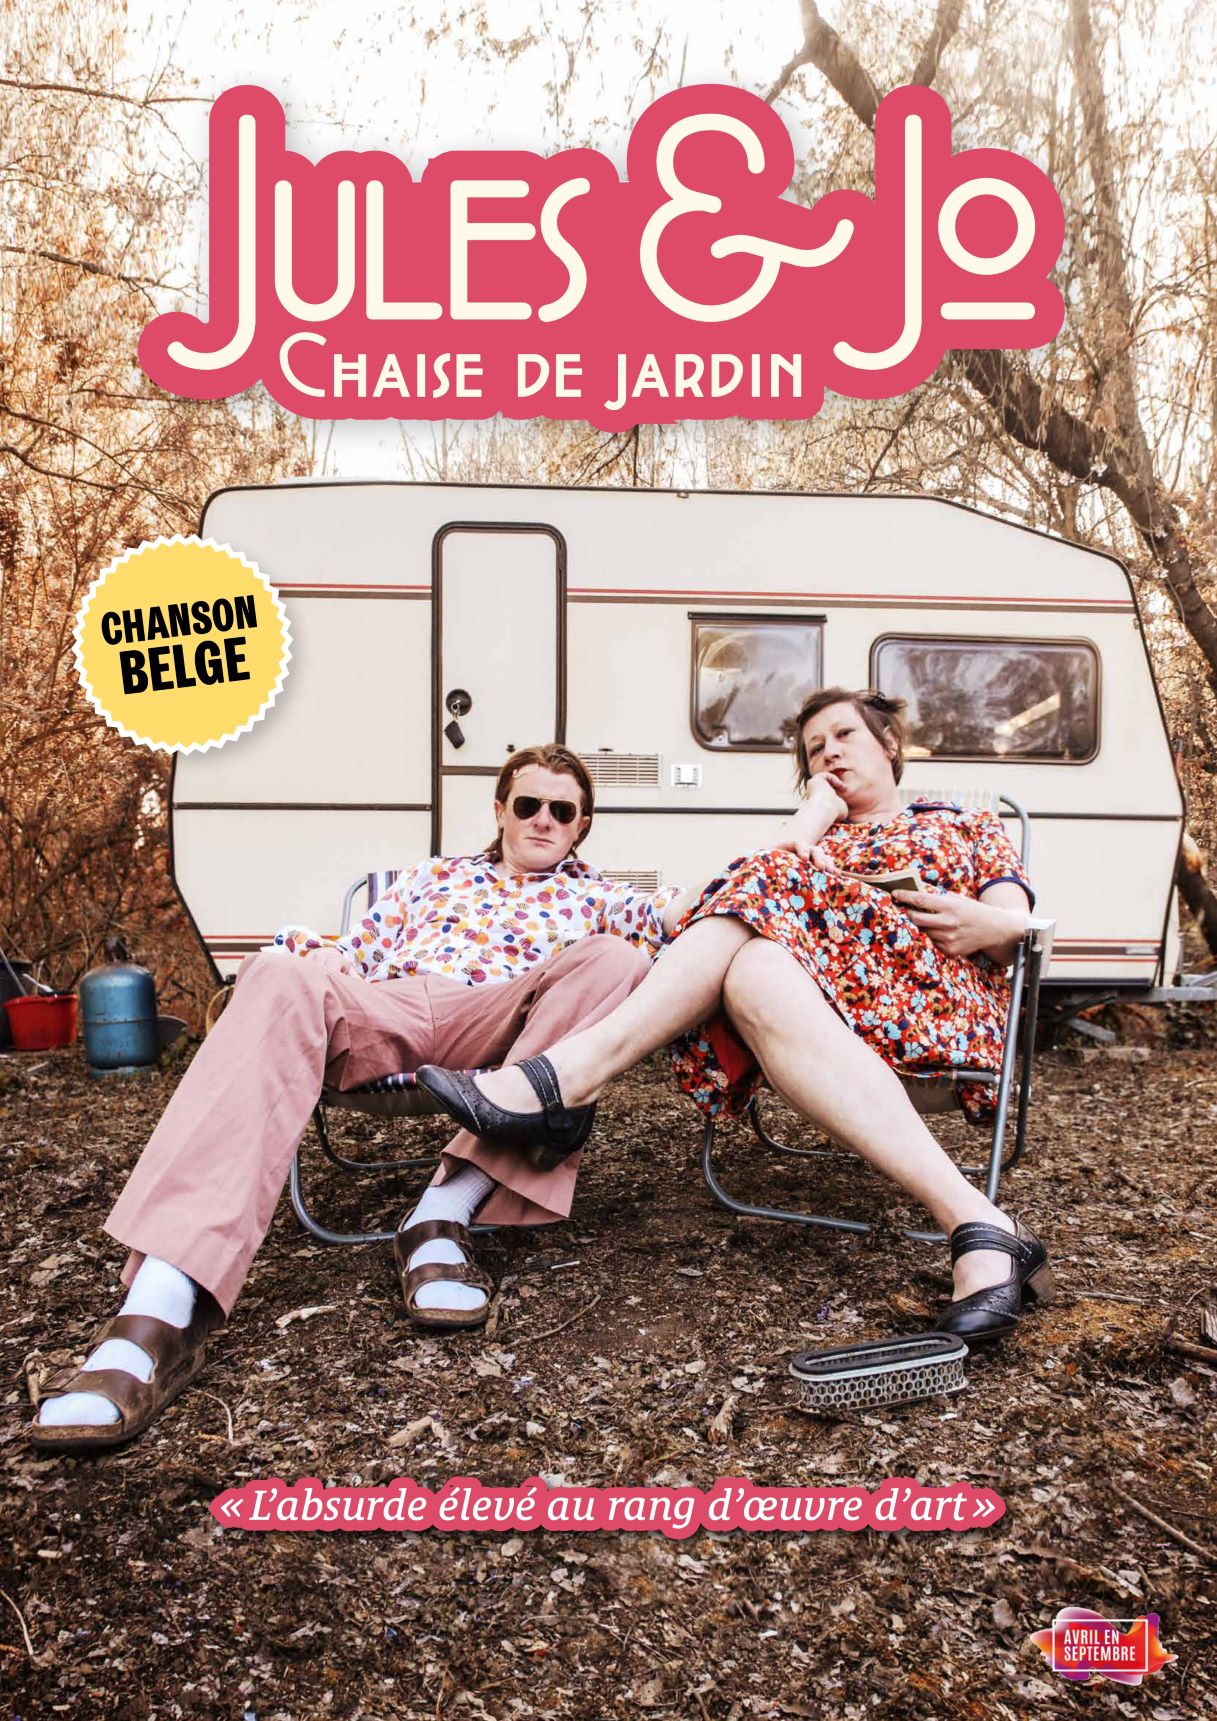 un homme et une femme assis devant une caravane, vus de loin. Jules & Jo écrit en lettres roses. 